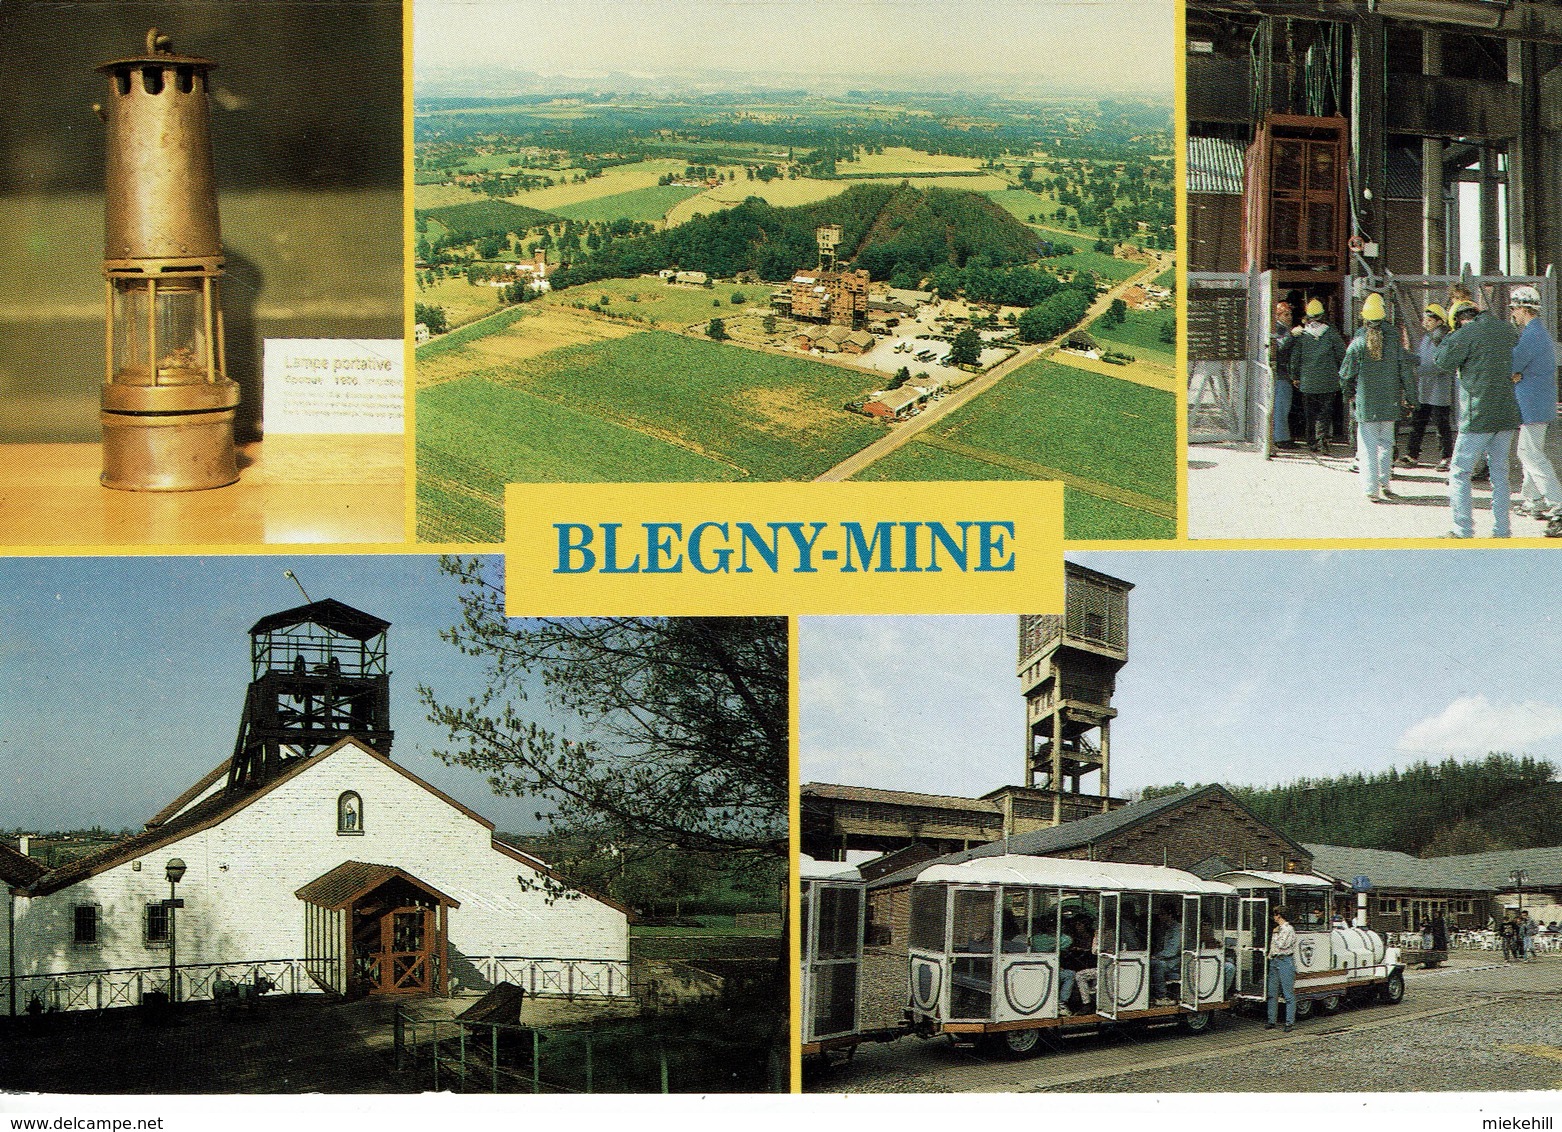 BLEGNY-MINE-CHARBONNAGE- LAMPE DE MINEUR-CHARBON-PATRIMOINE MONDIAL DE L'UNESCO - Blegny